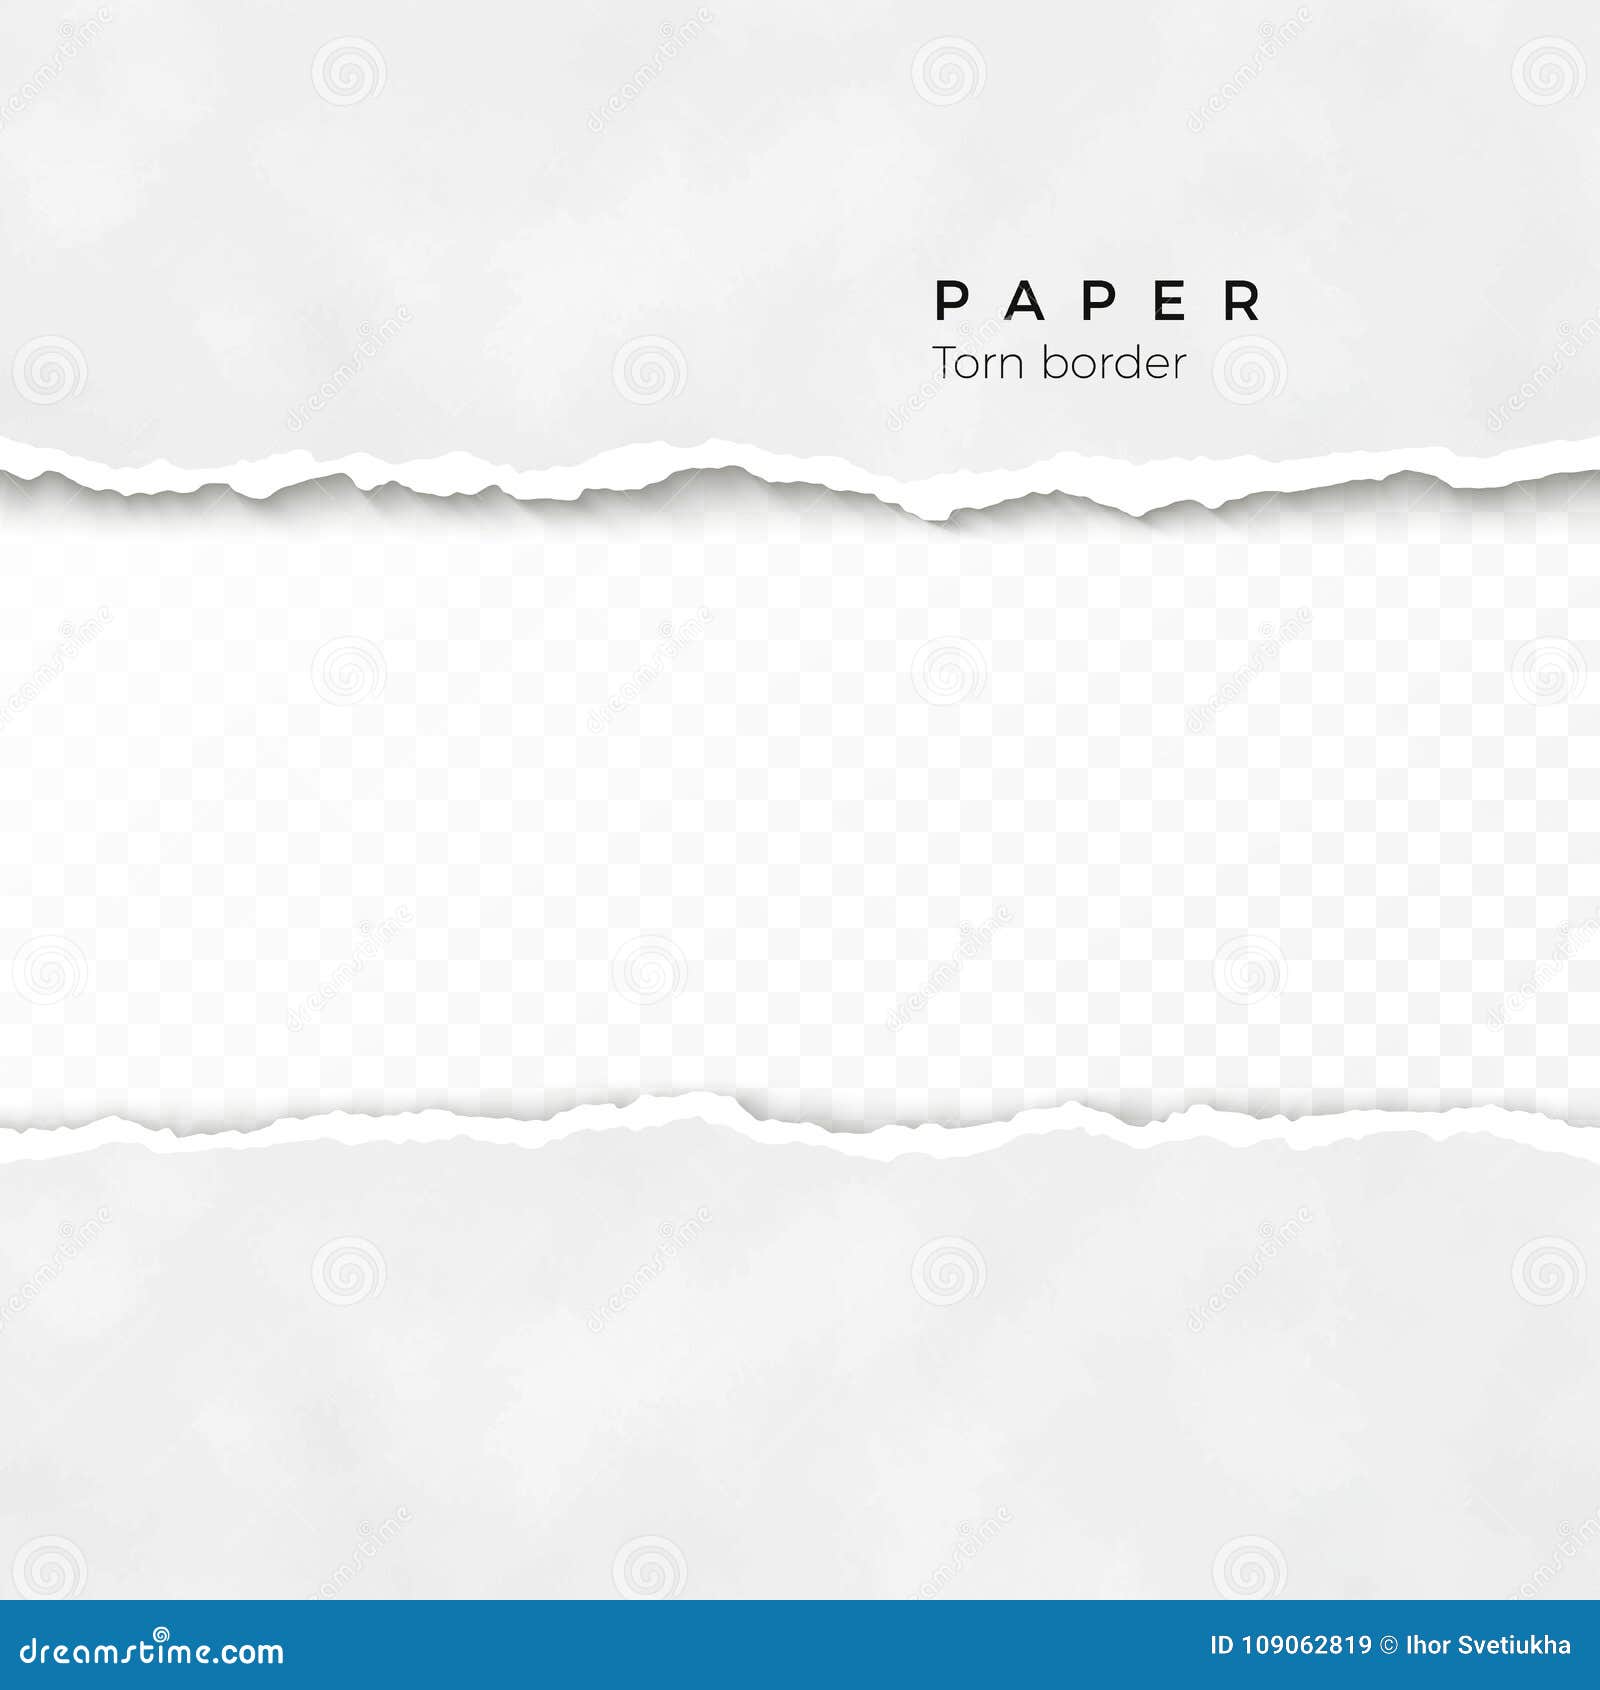 Bord De Papier Dechire Horizontal Texture De Papier Froissee Frontiere Cassee Approximative De La Rayure De Papier Illustration Illustration Stock Illustration Du Affiche Illustration